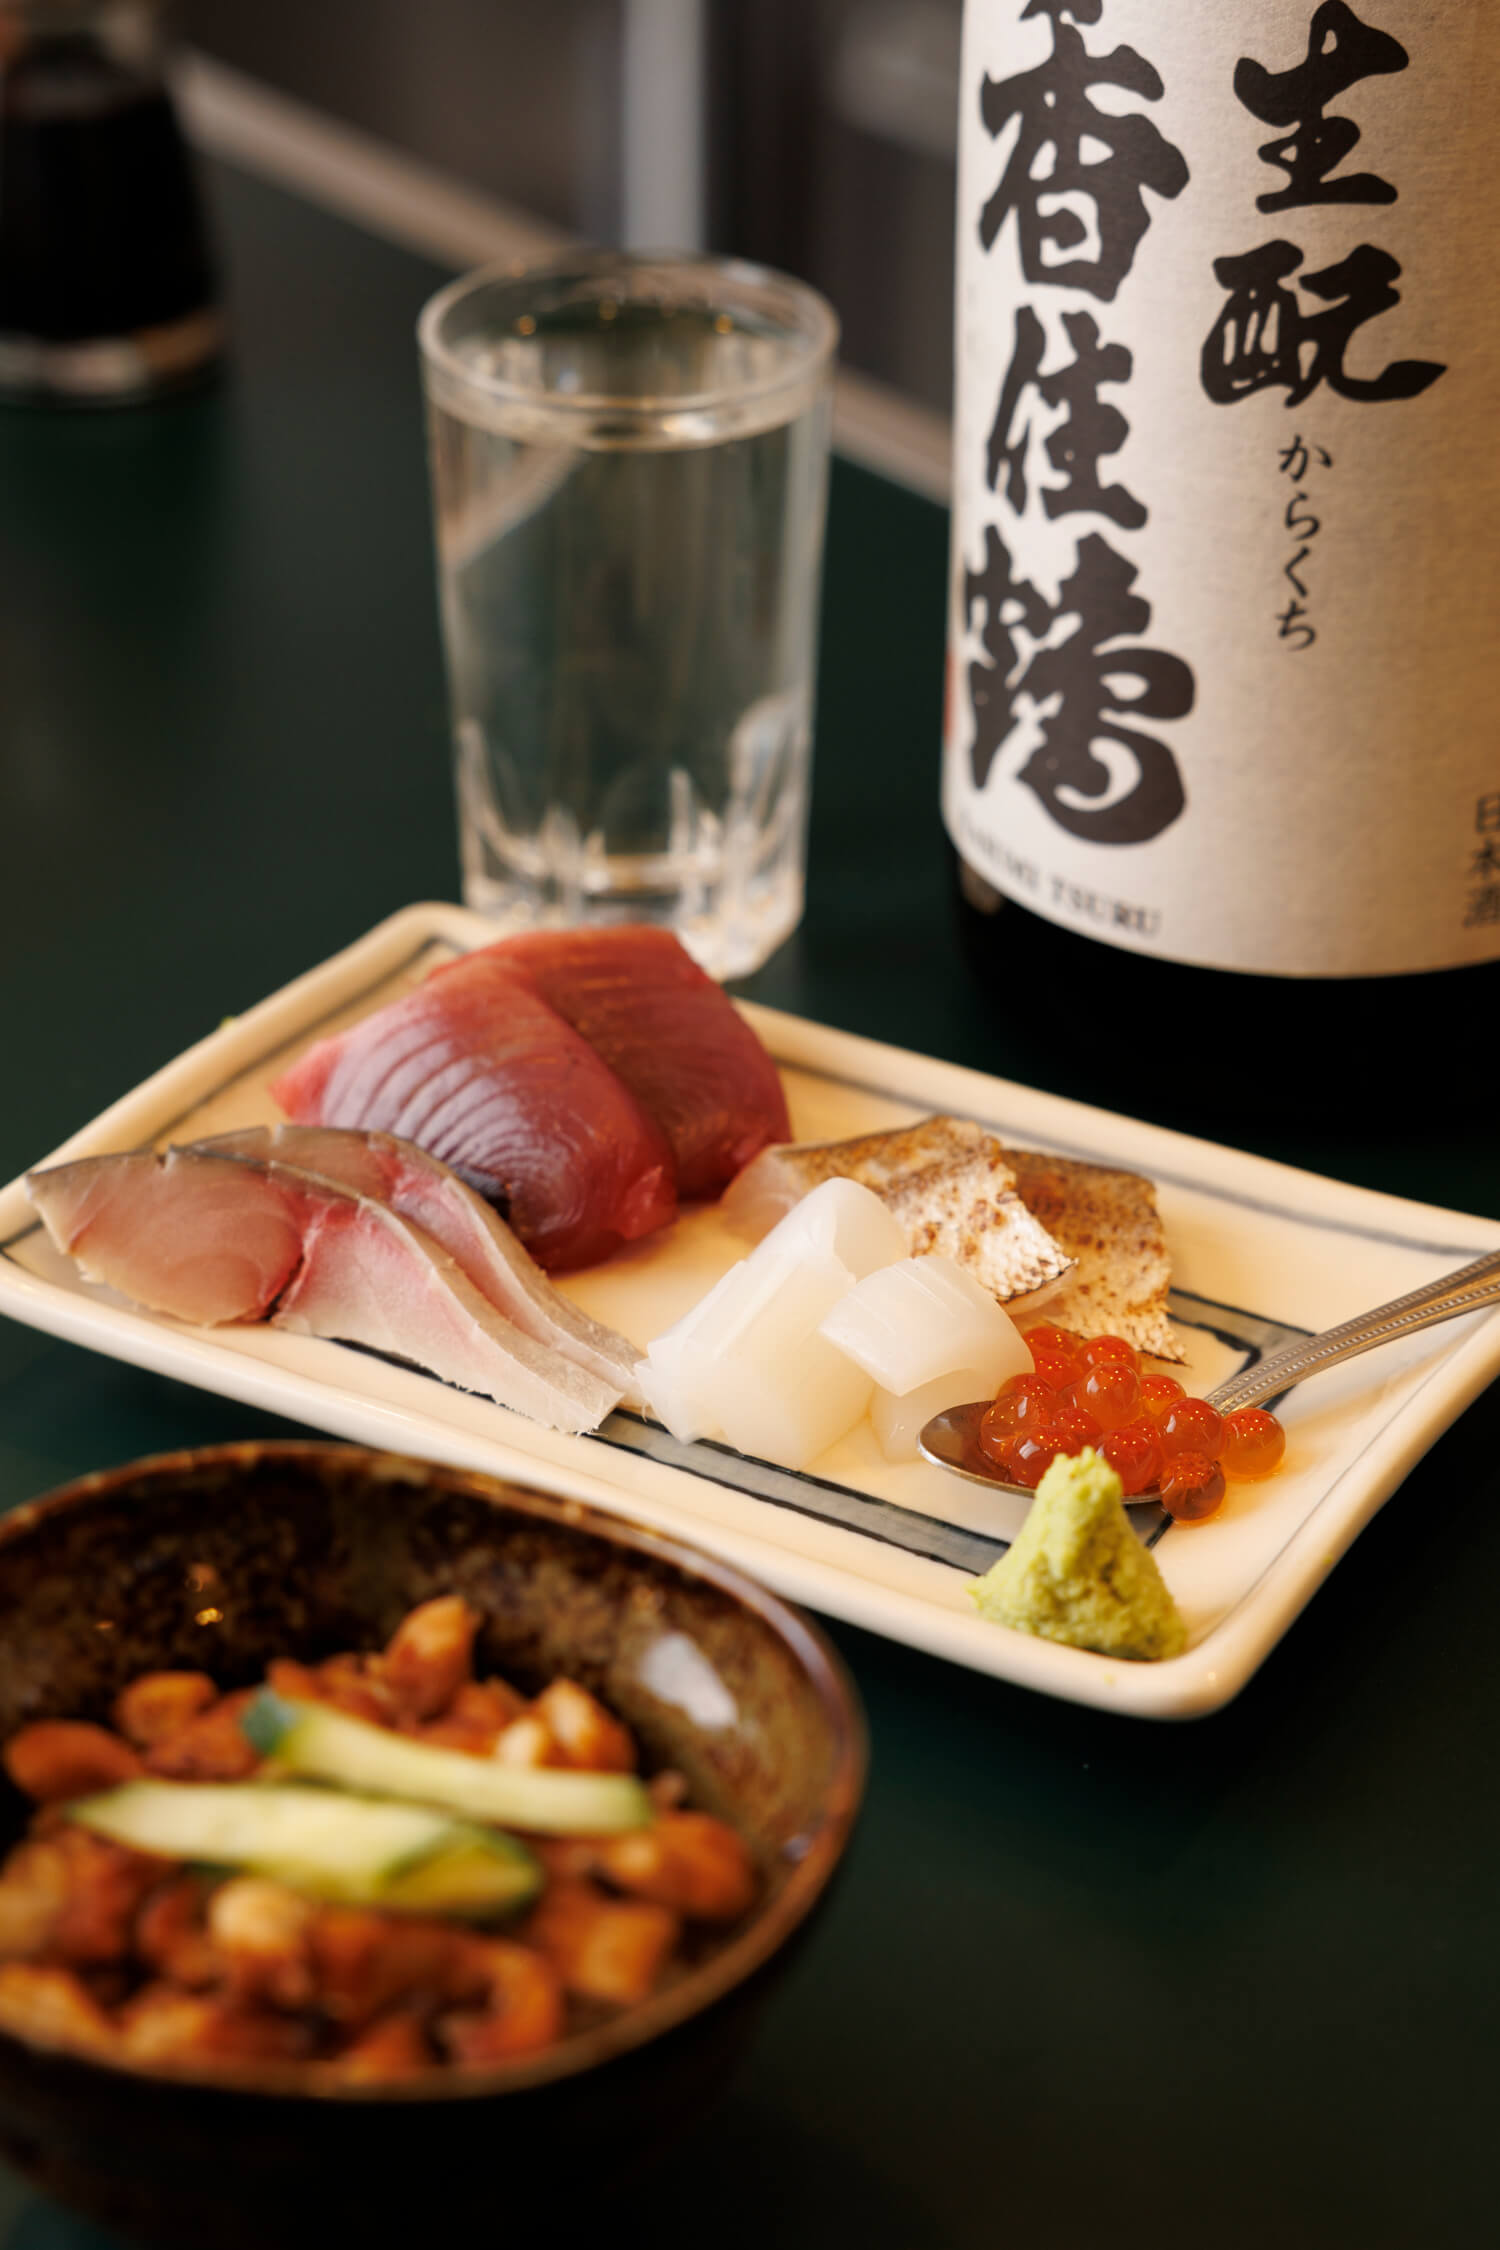 刺し盛りと、ミニ穴子めし350円。燗映えする「加賀鳶」「香住鶴」各600円など日本酒は7種ほど。